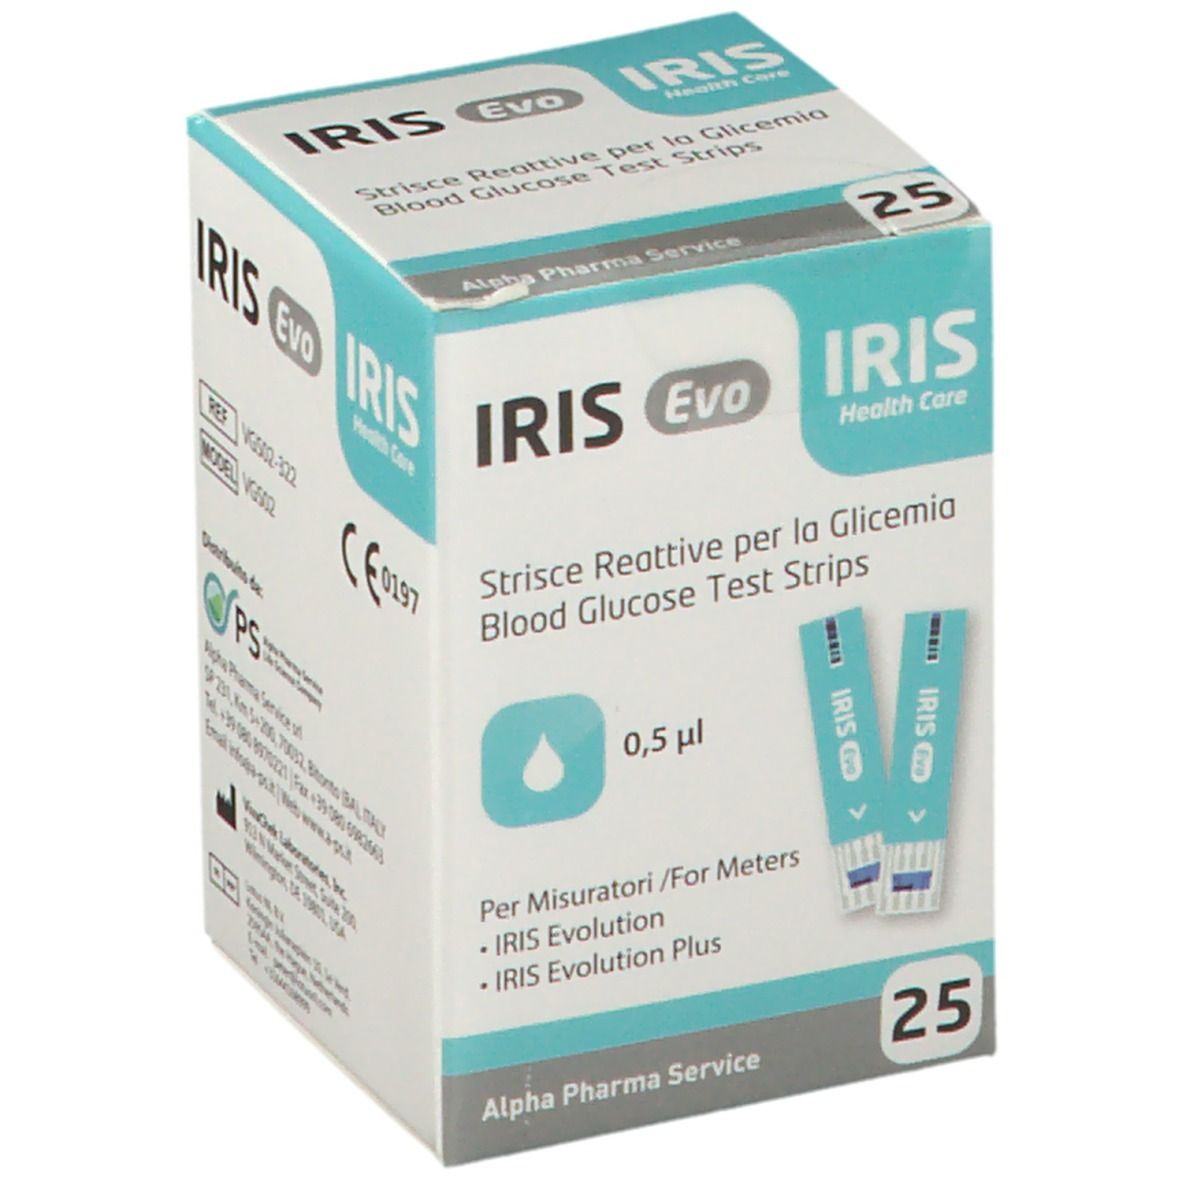 IRIS Evo Strisce reattive per la Glicemia